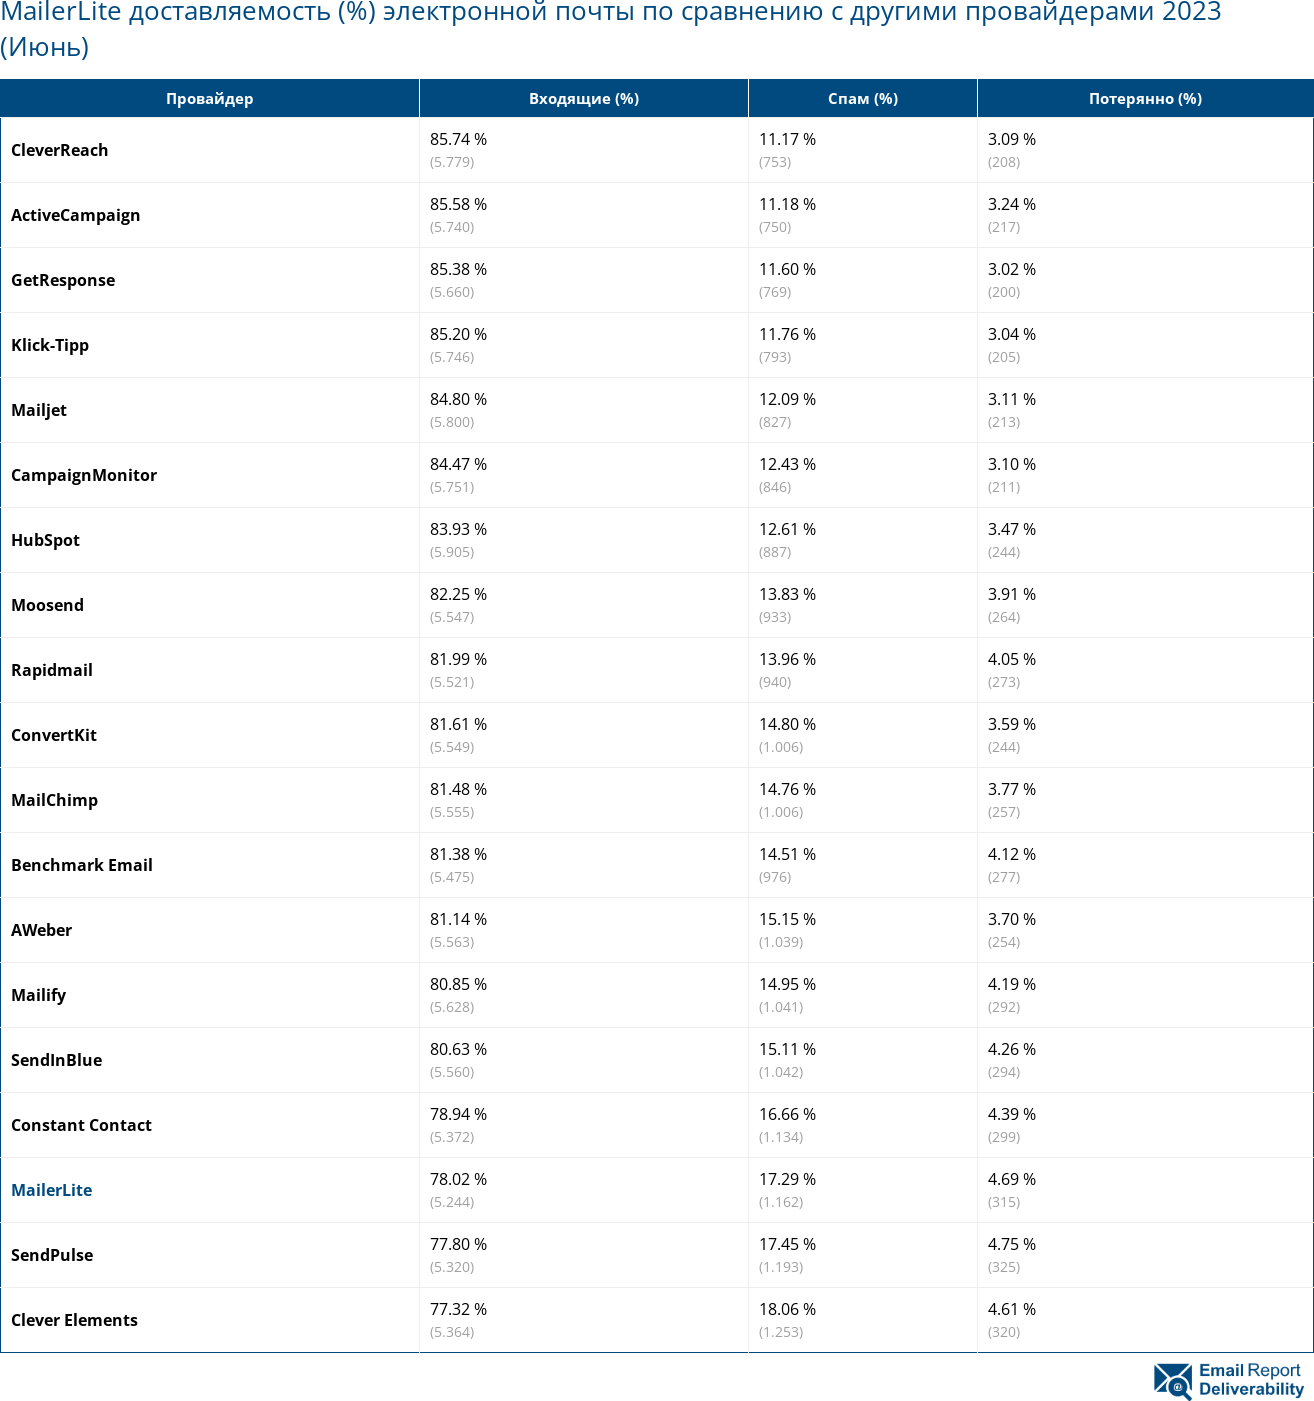 MailerLite доставляемость (%) электронной почты по сравнению с другими провайдерами 2023 (Июнь)